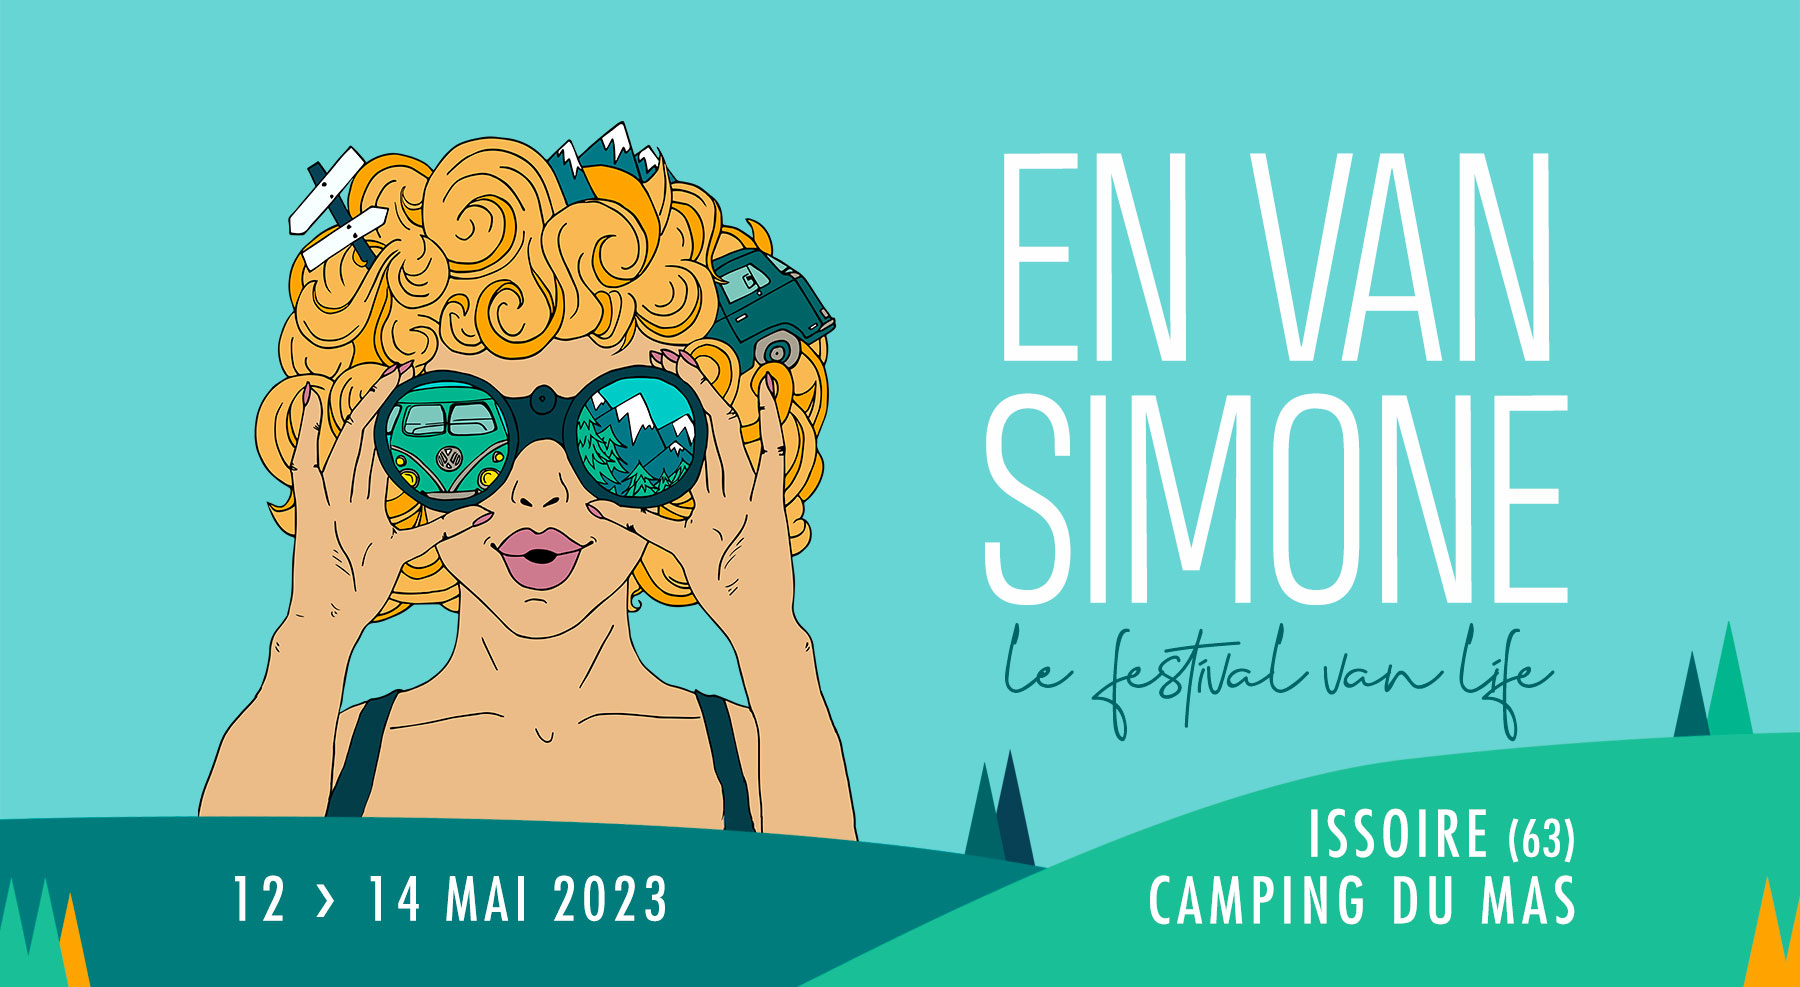 Brionne - Expo Camping-car et Van